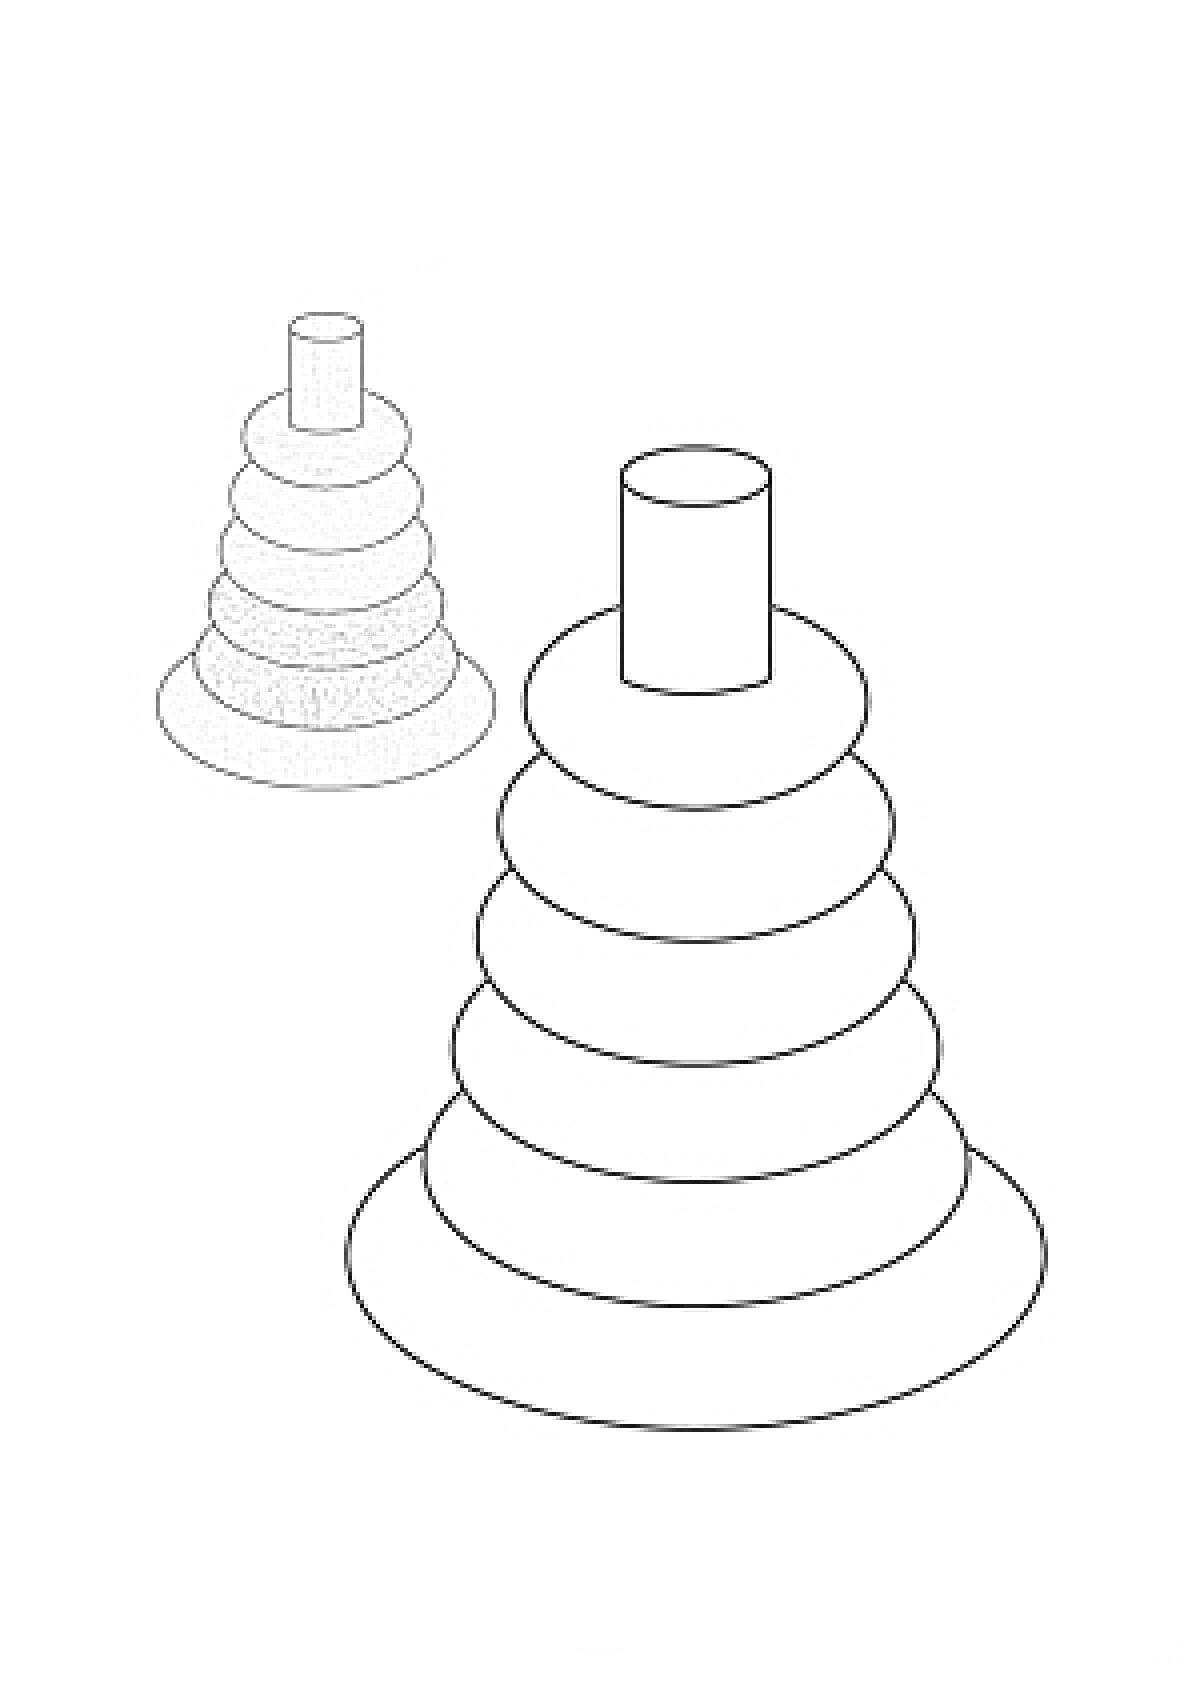 Раскраска Пирамидка с разноцветными кольцами и их черно-белый контур